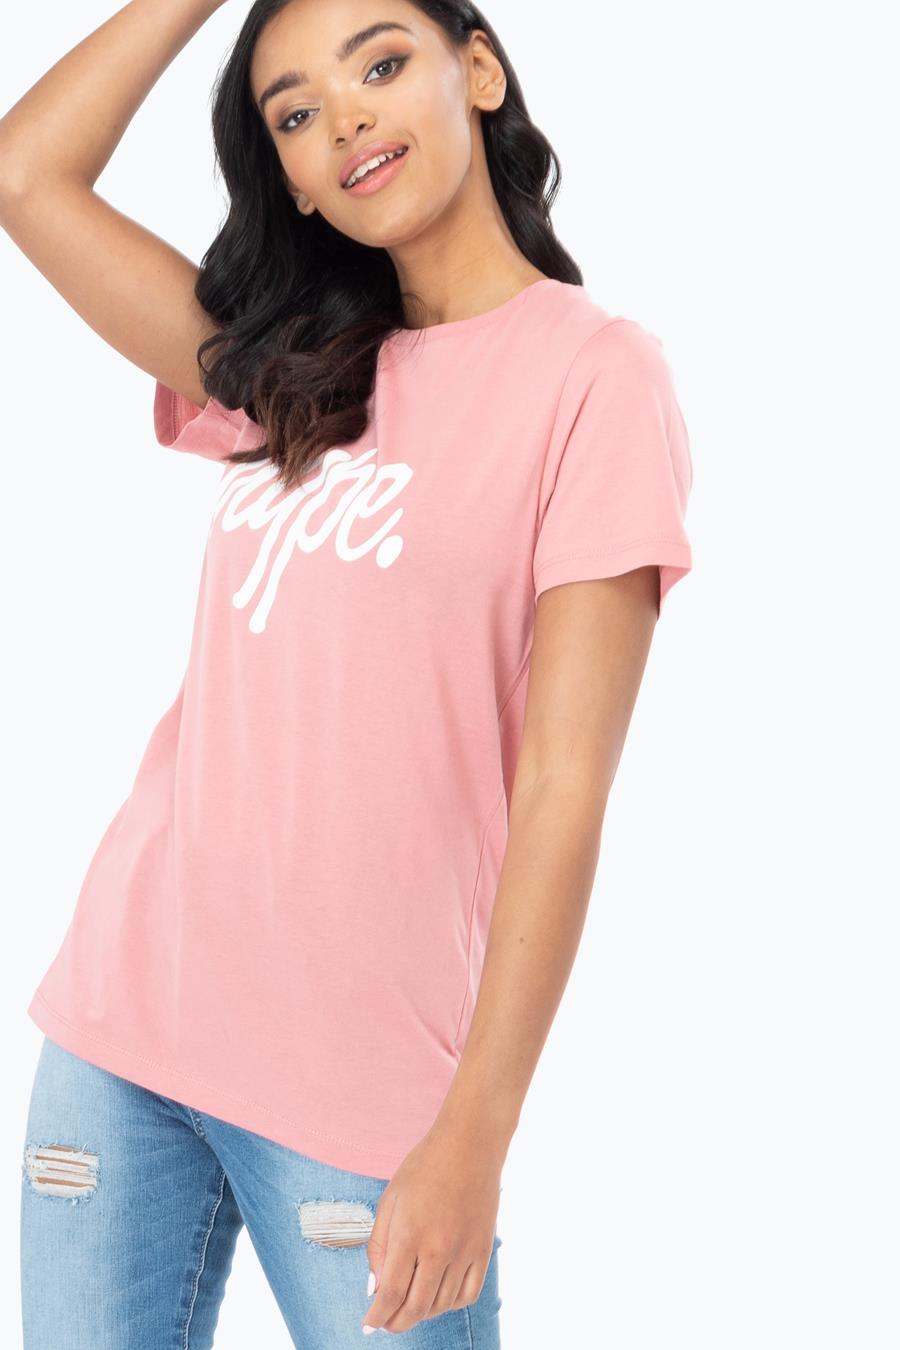 hype pink script womens t-shirt